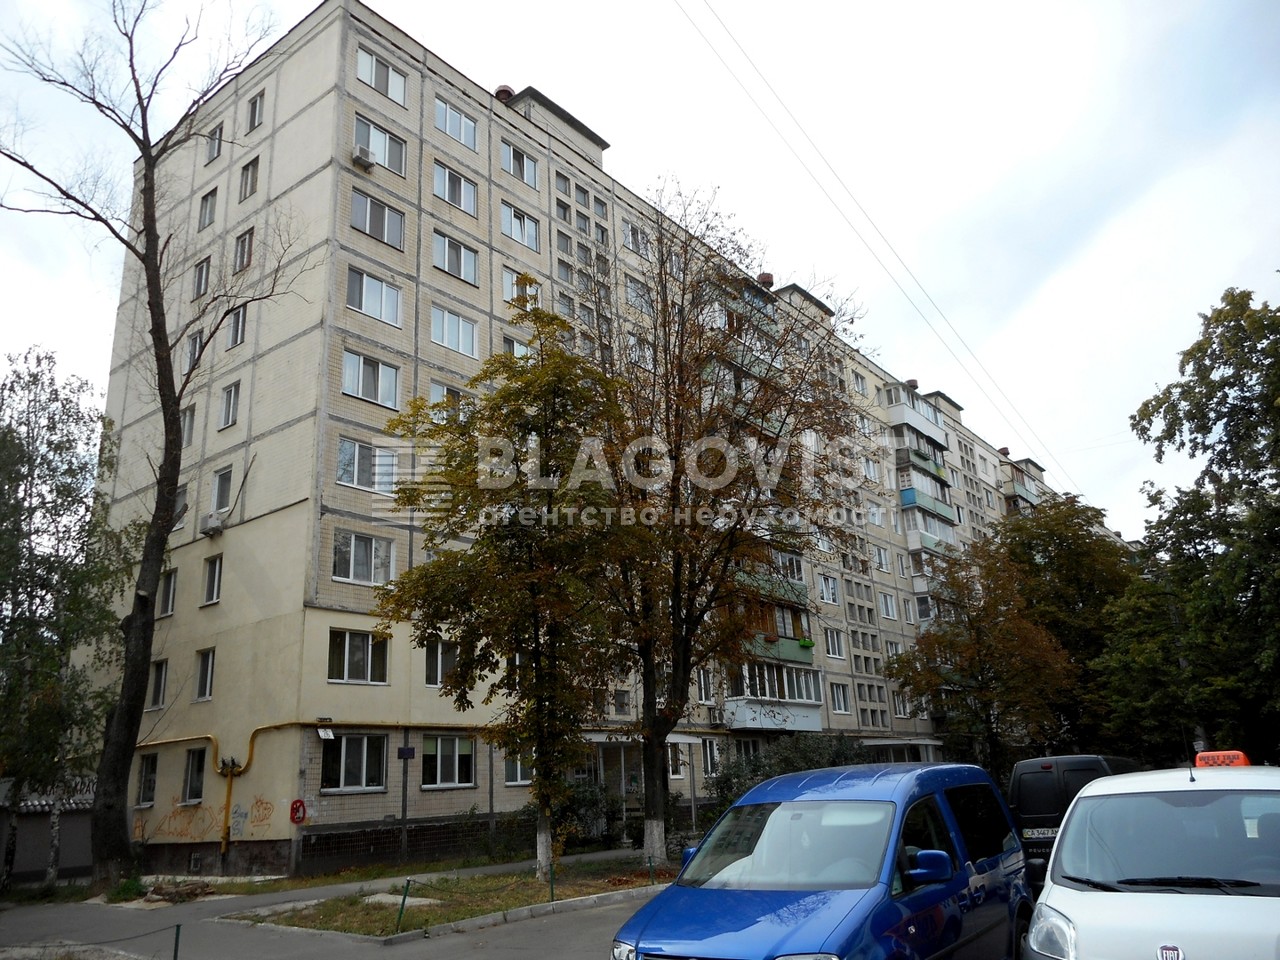 Квартира G-301191, Лятошинского, 26а, Киев - Фото 2